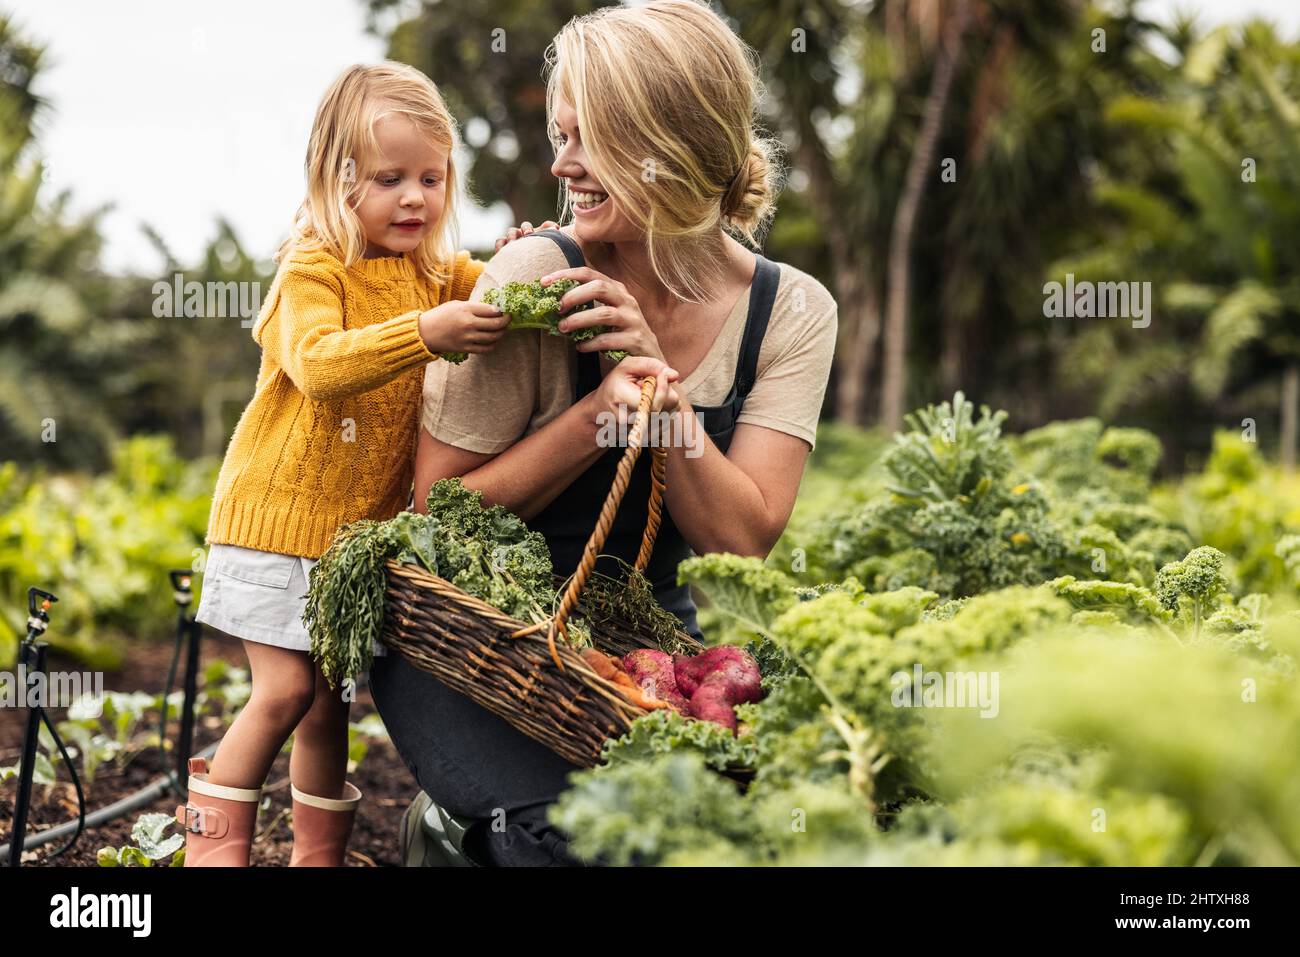 Glückliche alleinerziehende Mutter pflücken frisches Gemüse mit ihrer Tochter. Fröhliche junge Mutter lächelt, während sie ihrer Tochter frischen Grünkohl in einem Bio-mangold zeigt Stockfoto